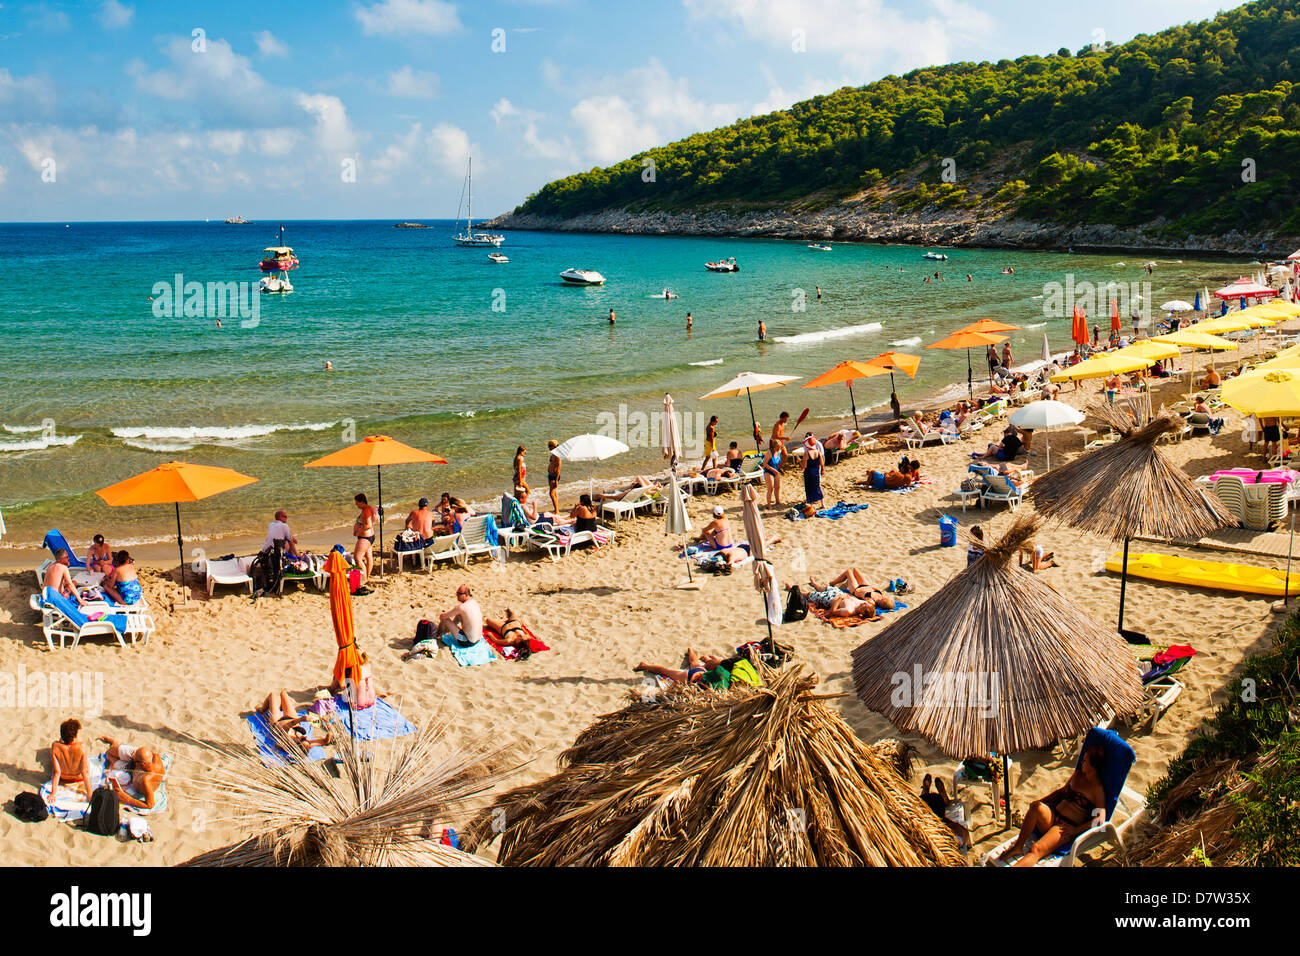 Sunj Beach, une plage de sable très prisée sur l'île de Lopud, les îles Élaphites (Elaphites), de la côte dalmate, Mer Adriatique, Croatie Banque D'Images